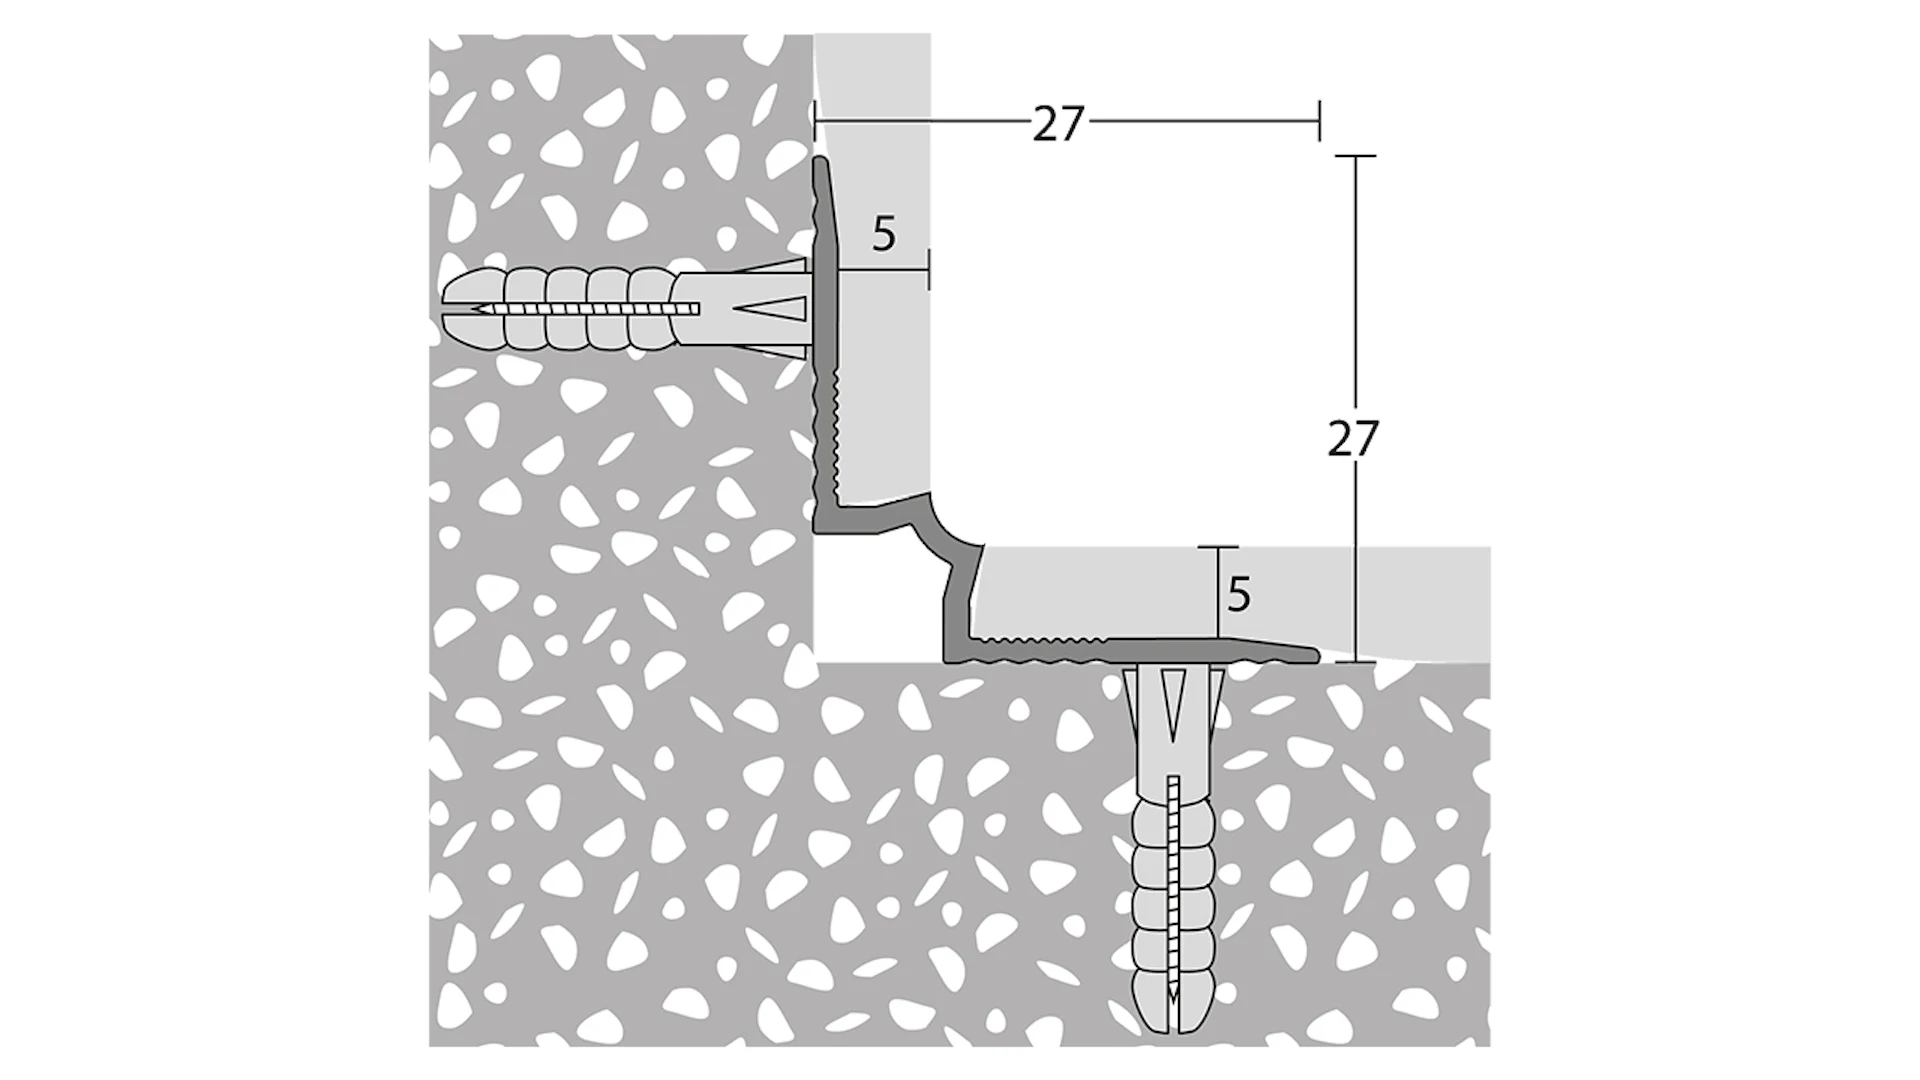 Angolo interno delle scale Prinz - 27 x 27 mm - acciaio inox satinato